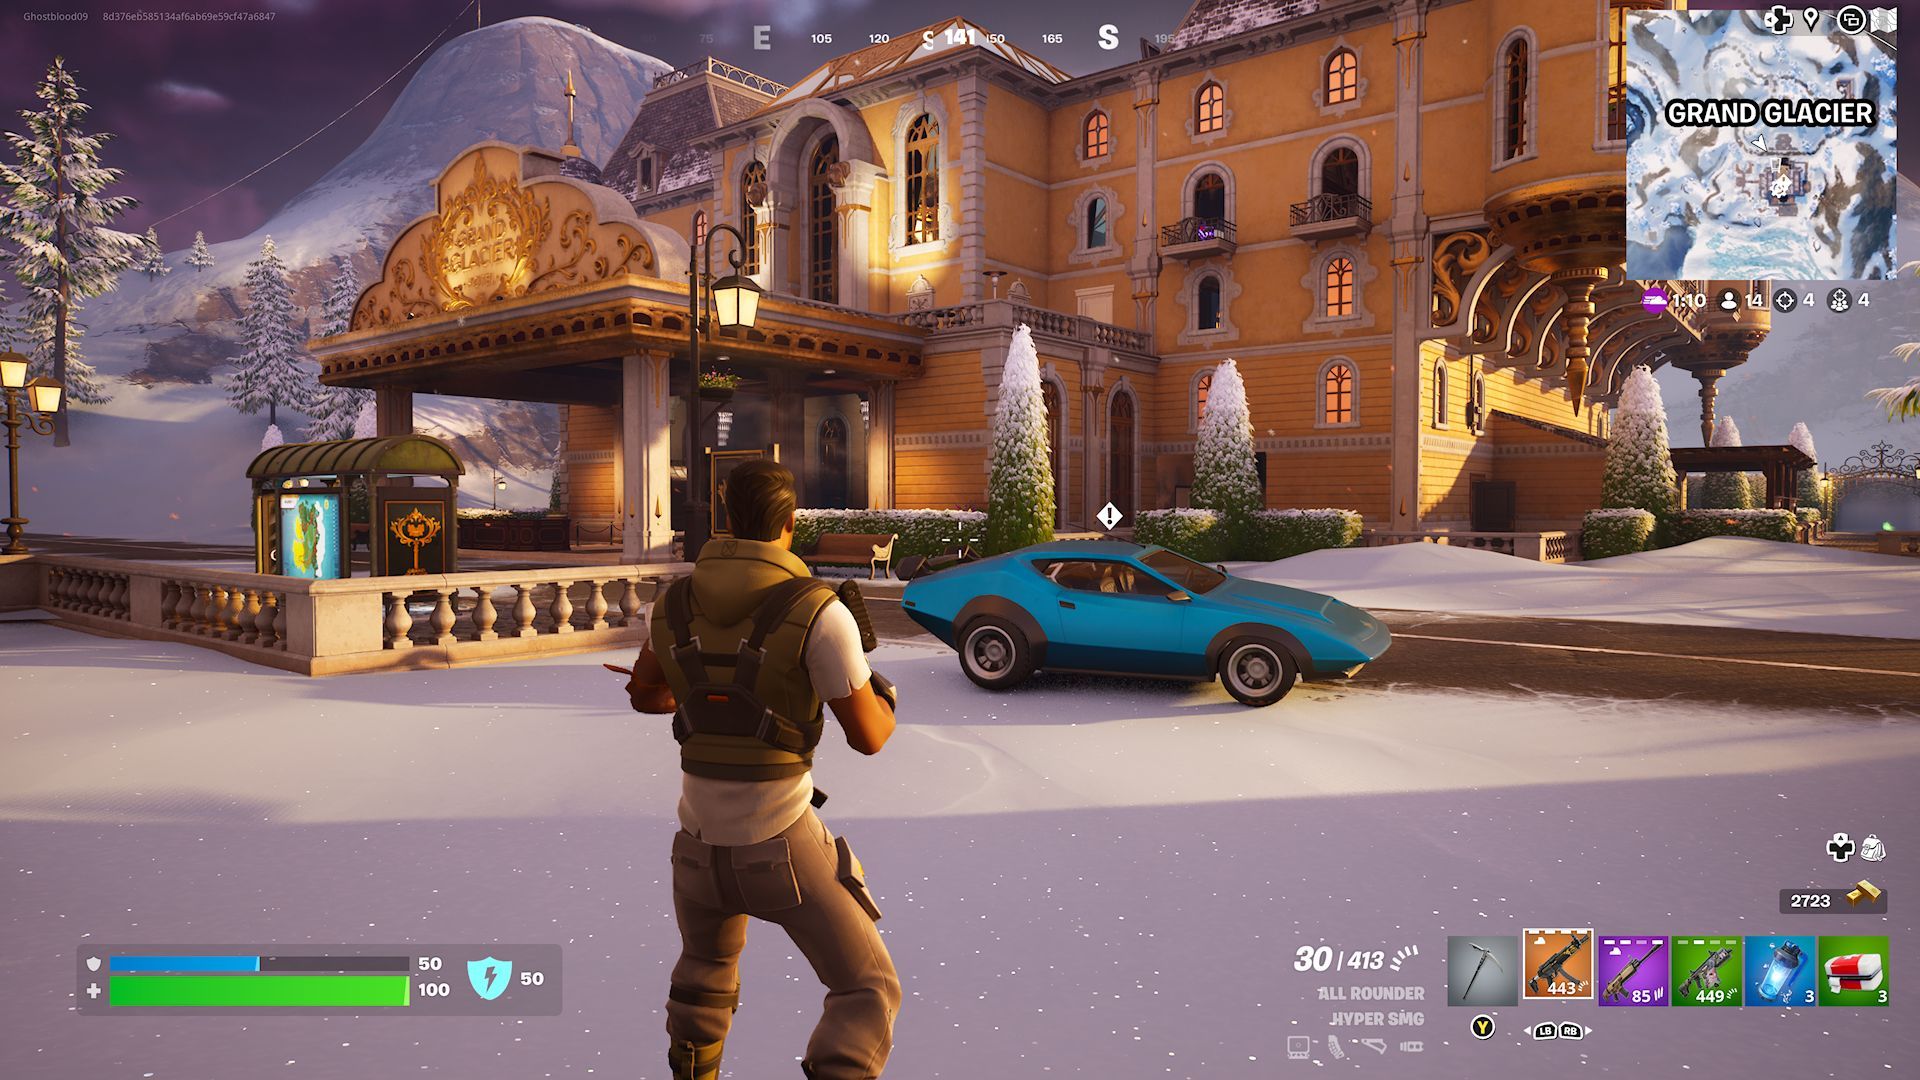 Игрок, стоящий рядом с Whiplash, припарковался возле отеля Grand Glacier в Fortnite.